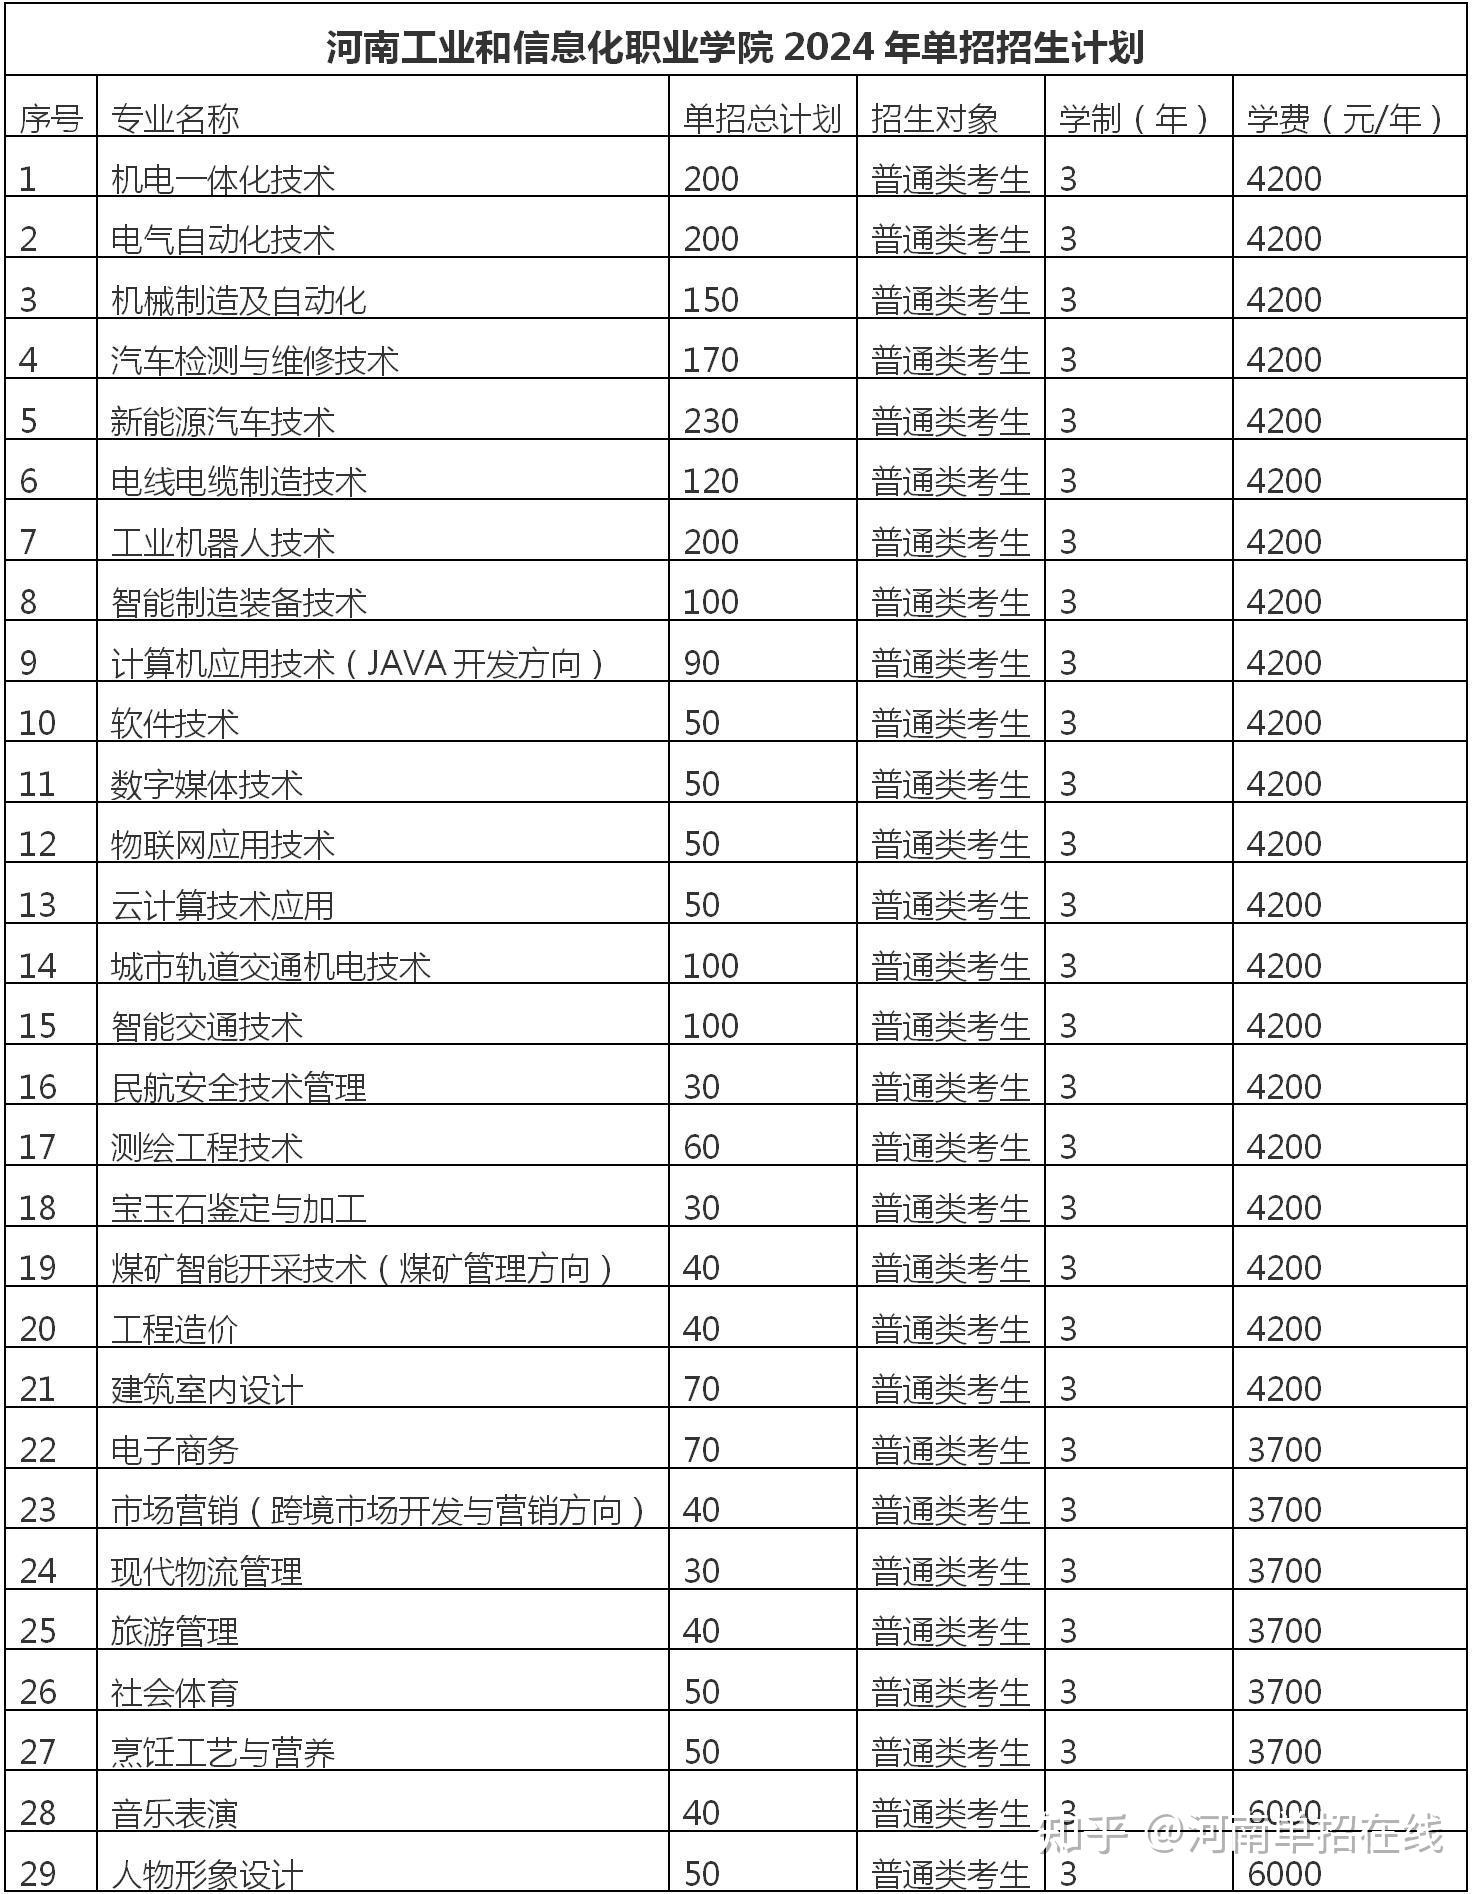 12  河南工业和信息化职业学院2024单招招生计划11  许昌职业技术学院